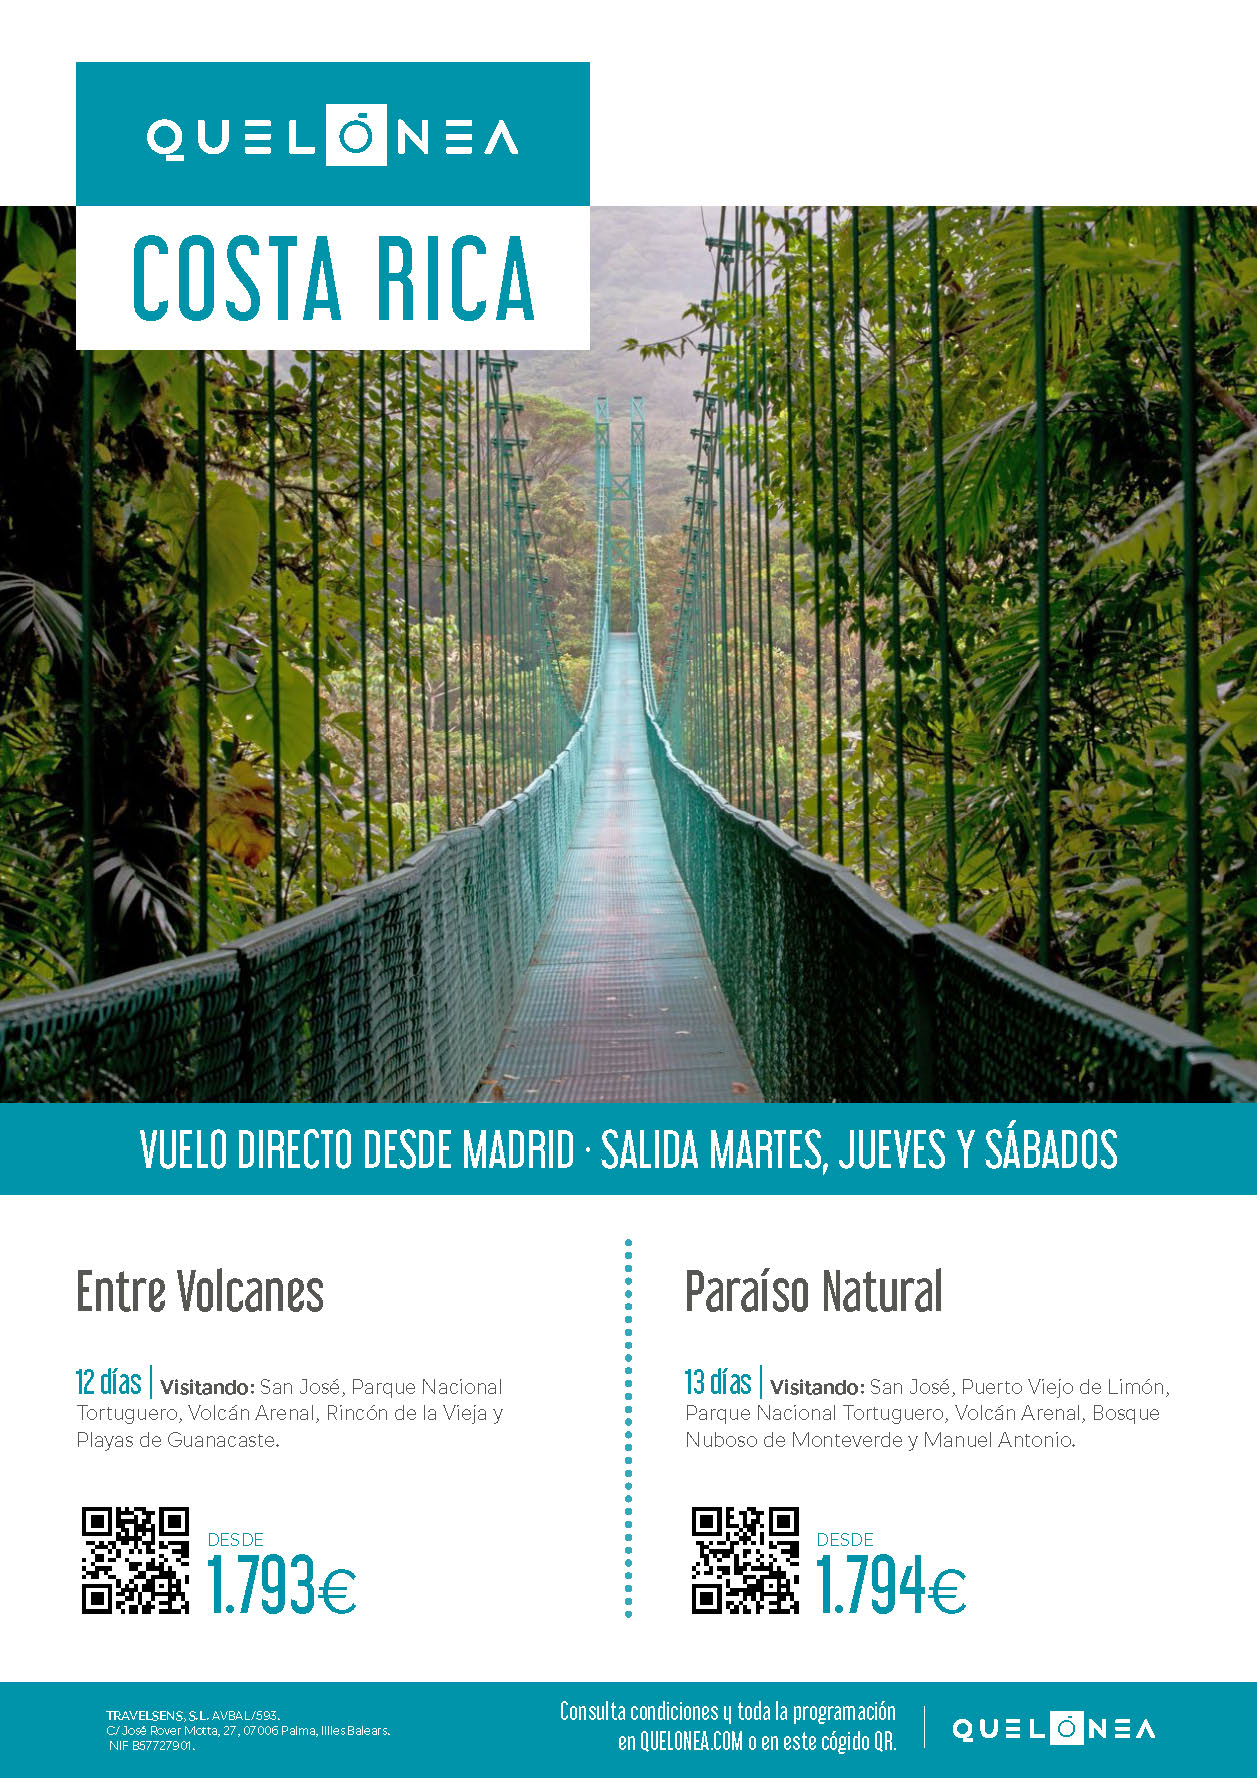 Ofertas Quelonea Costa Rica Entre Volcanes Paraiso Natural 2022 12 o 13 dias vuelo directo desde Madrid